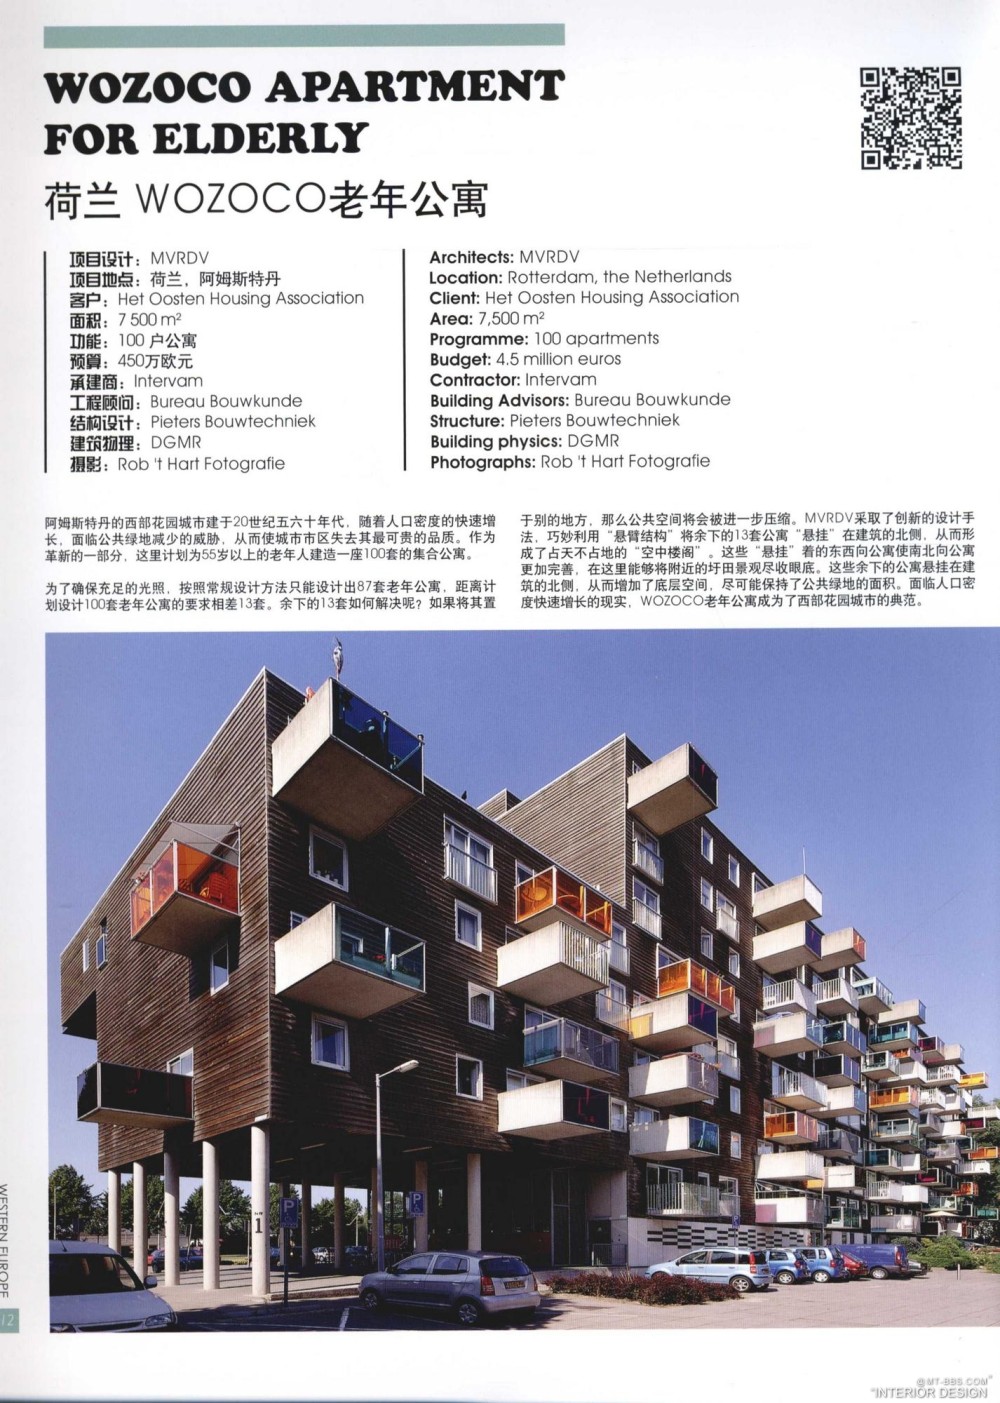 《夕阳无限+世界当代养老院与老年公寓设计》_kobe 0012.jpg